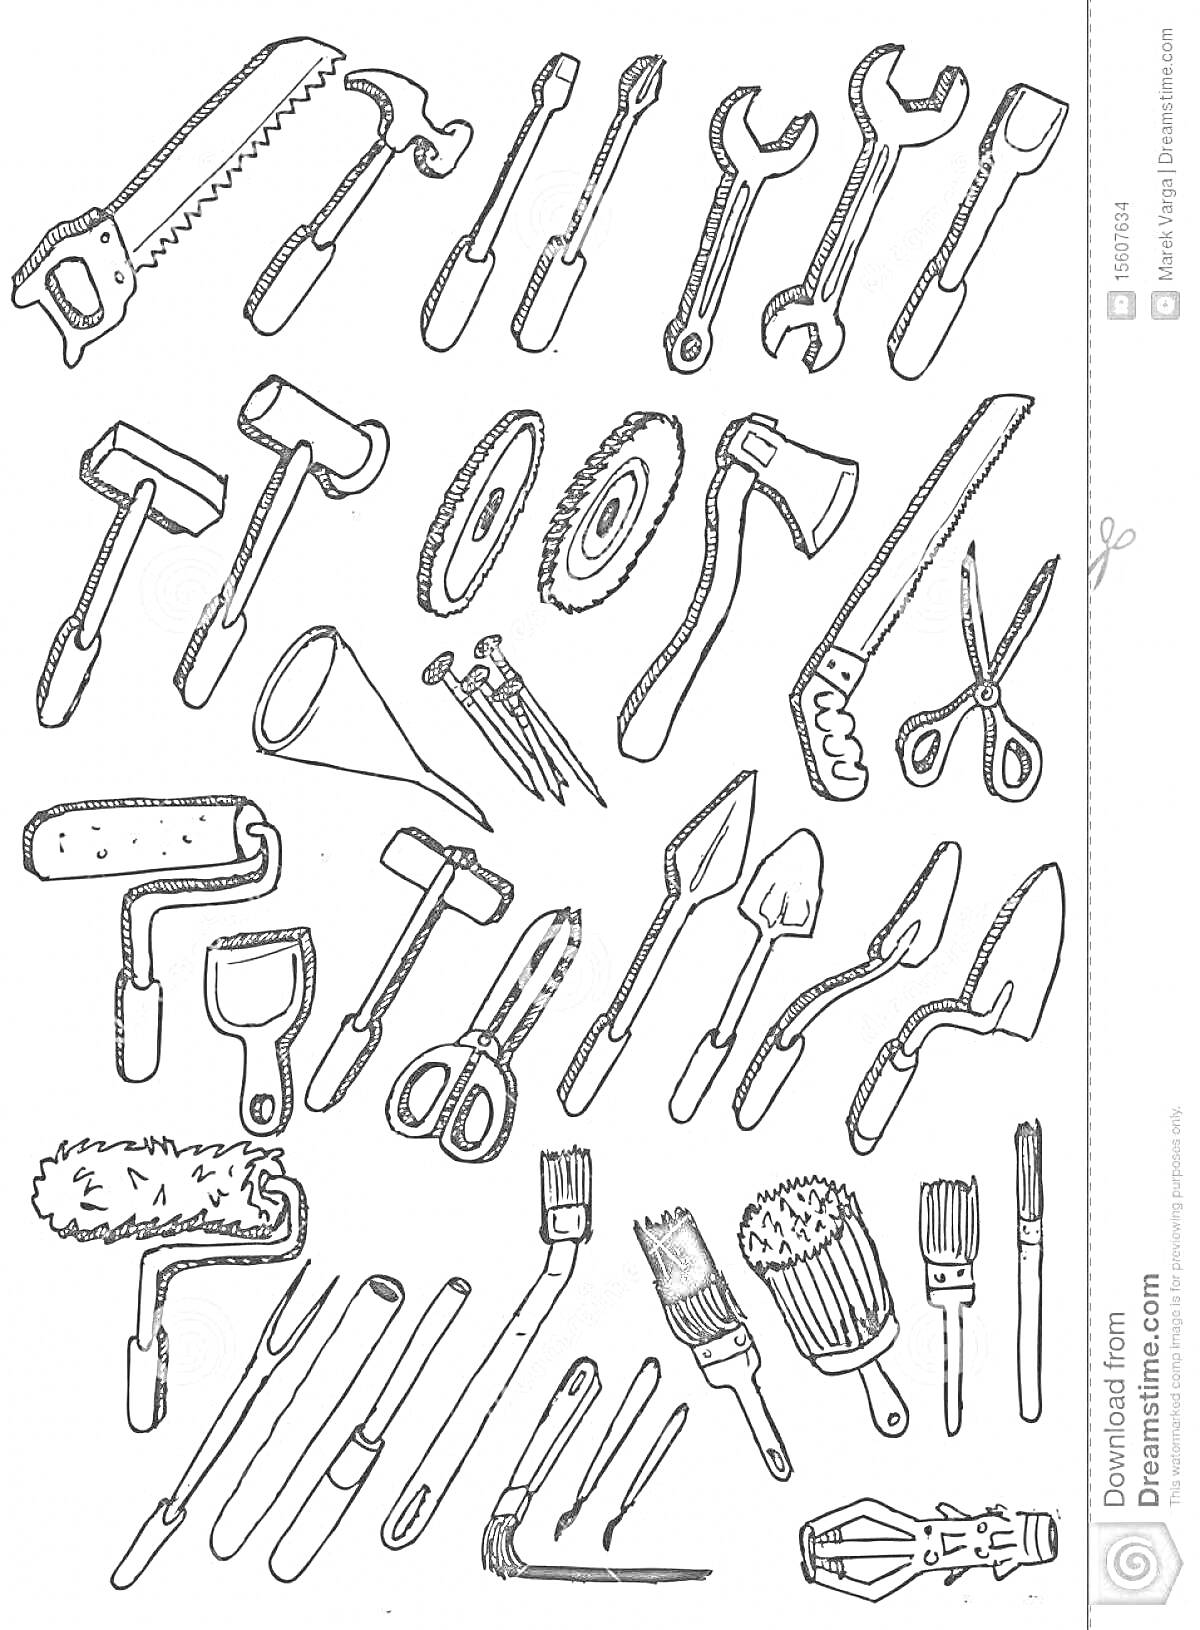 Раскраска Раскраска орудия труда и инструменты: пила, молоток, гаечный ключ, отвёртка, пассатижи, ножовка, гвозди, валик для краски, кисточка, мастерок, топор, ножницы, рашпиль, металлическая щётка